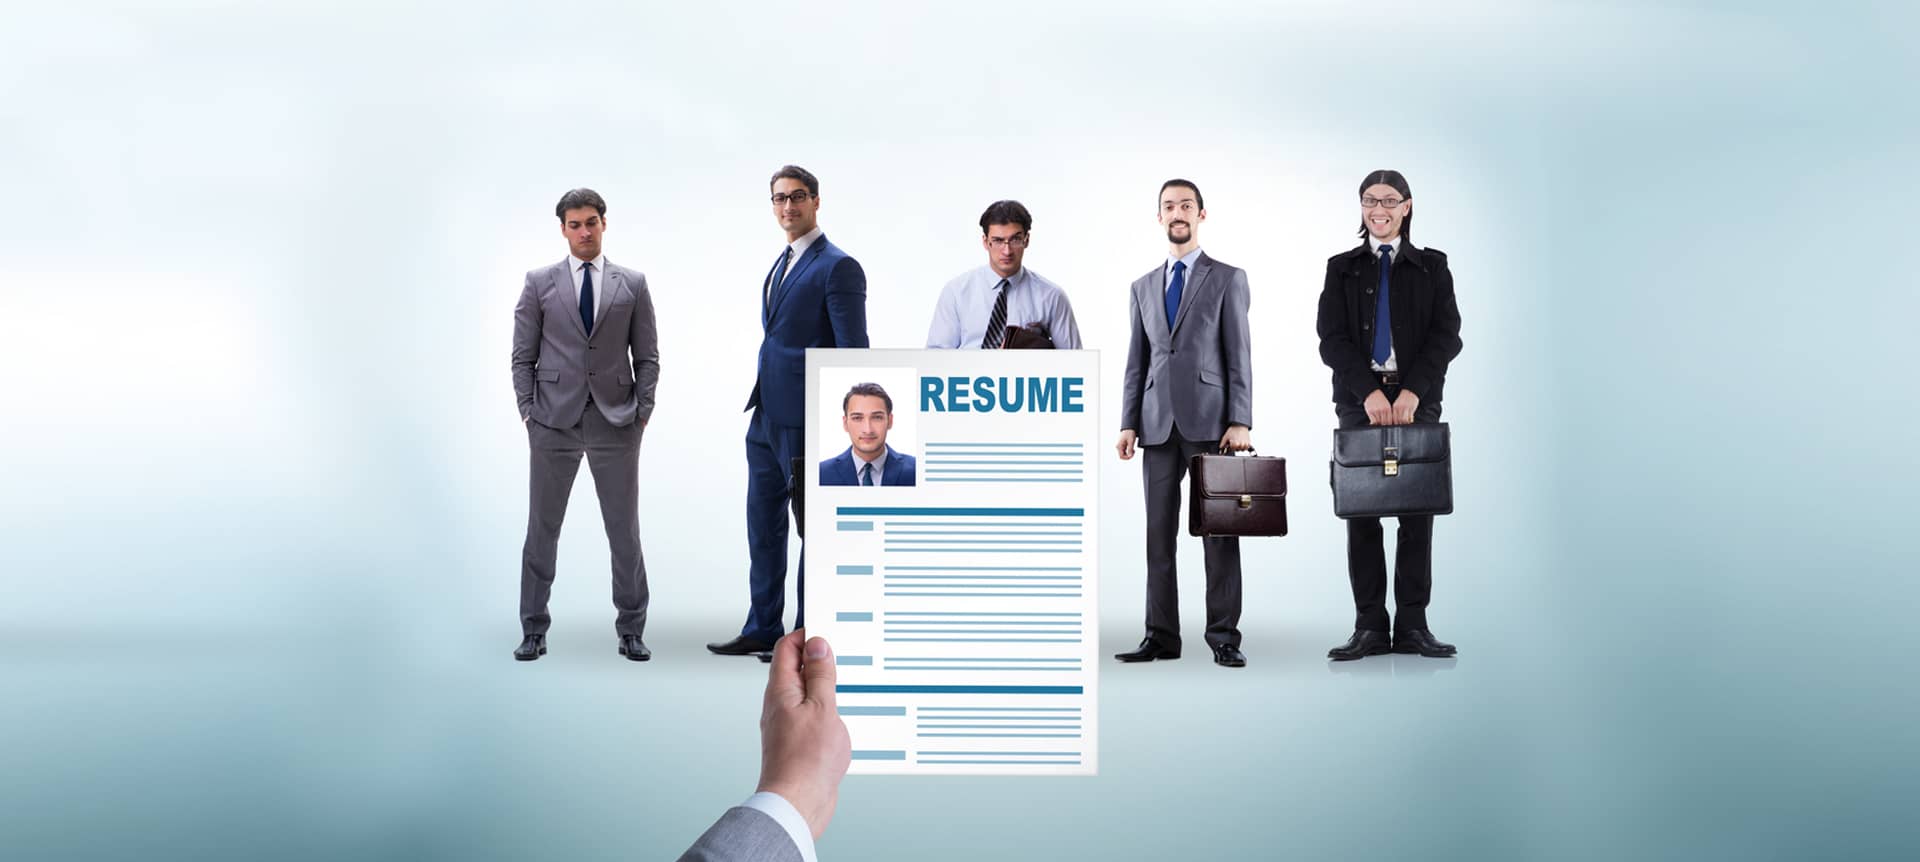 Scanning resume faster through hiring tools